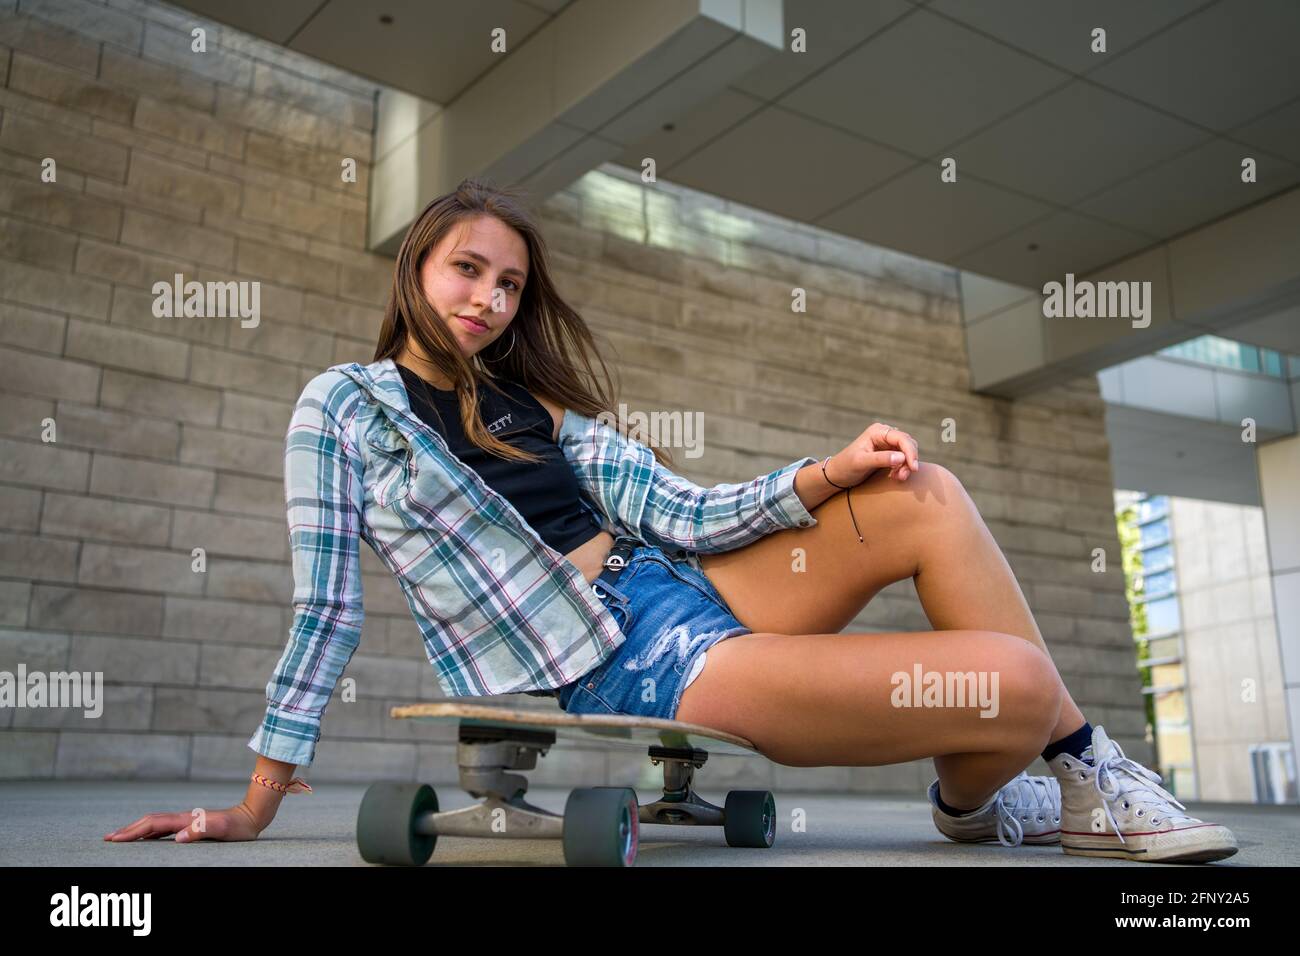 Jeune femme posant avec son skateboard dans un cadre urbain Banque D'Images